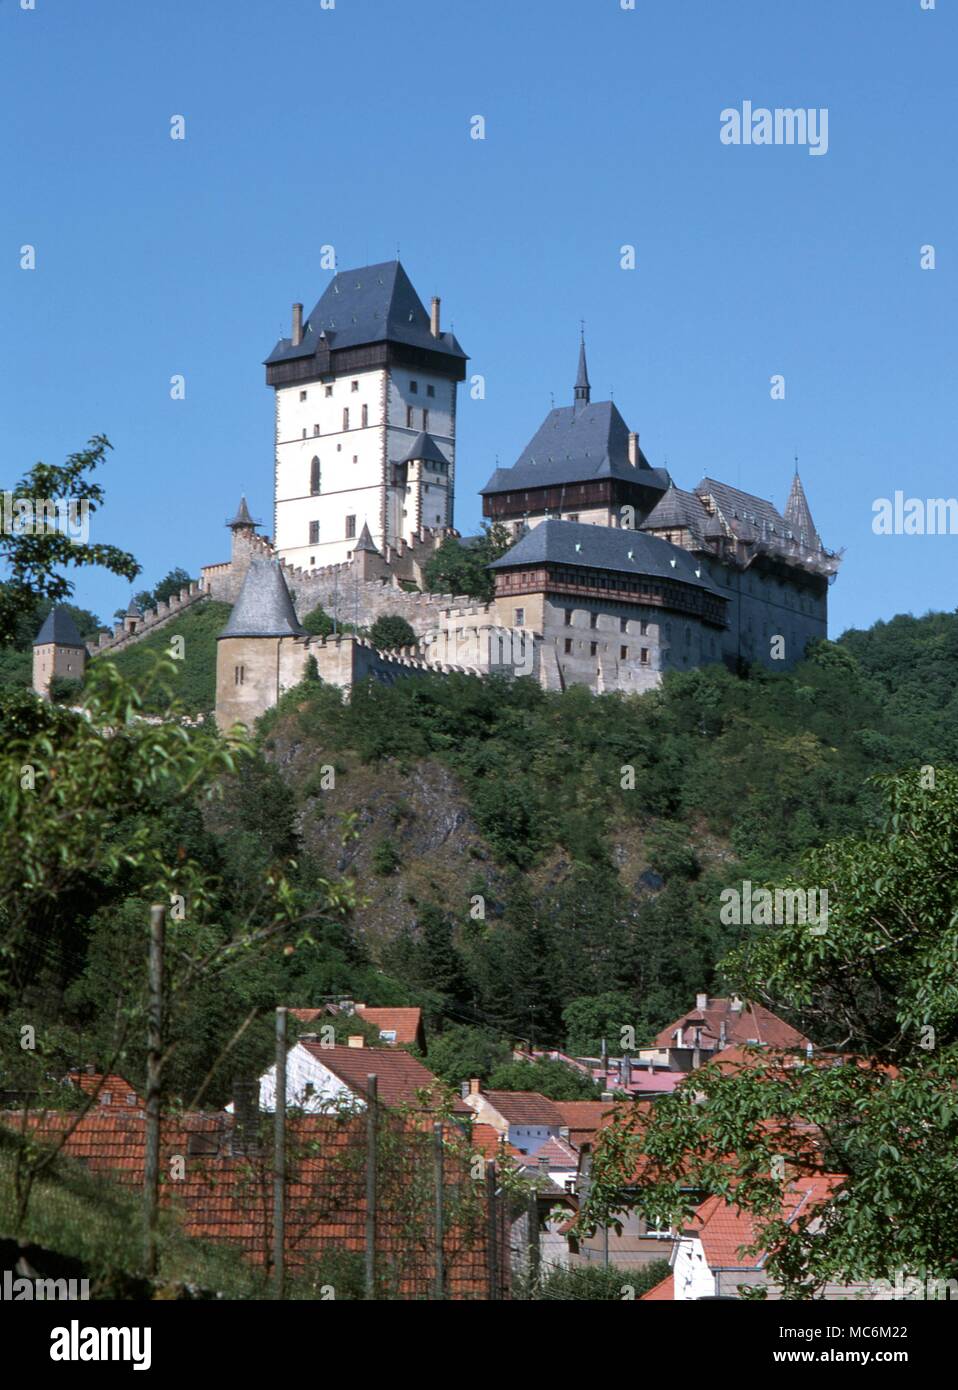 Château de Karlstein, construit par Charles IV de Bohême et toujours le centre de la grande ouverture de la sagesse. Il a été le gardien château pour le Trésor de la Couronne impériale et de nombreuses reliques saintes Banque D'Images